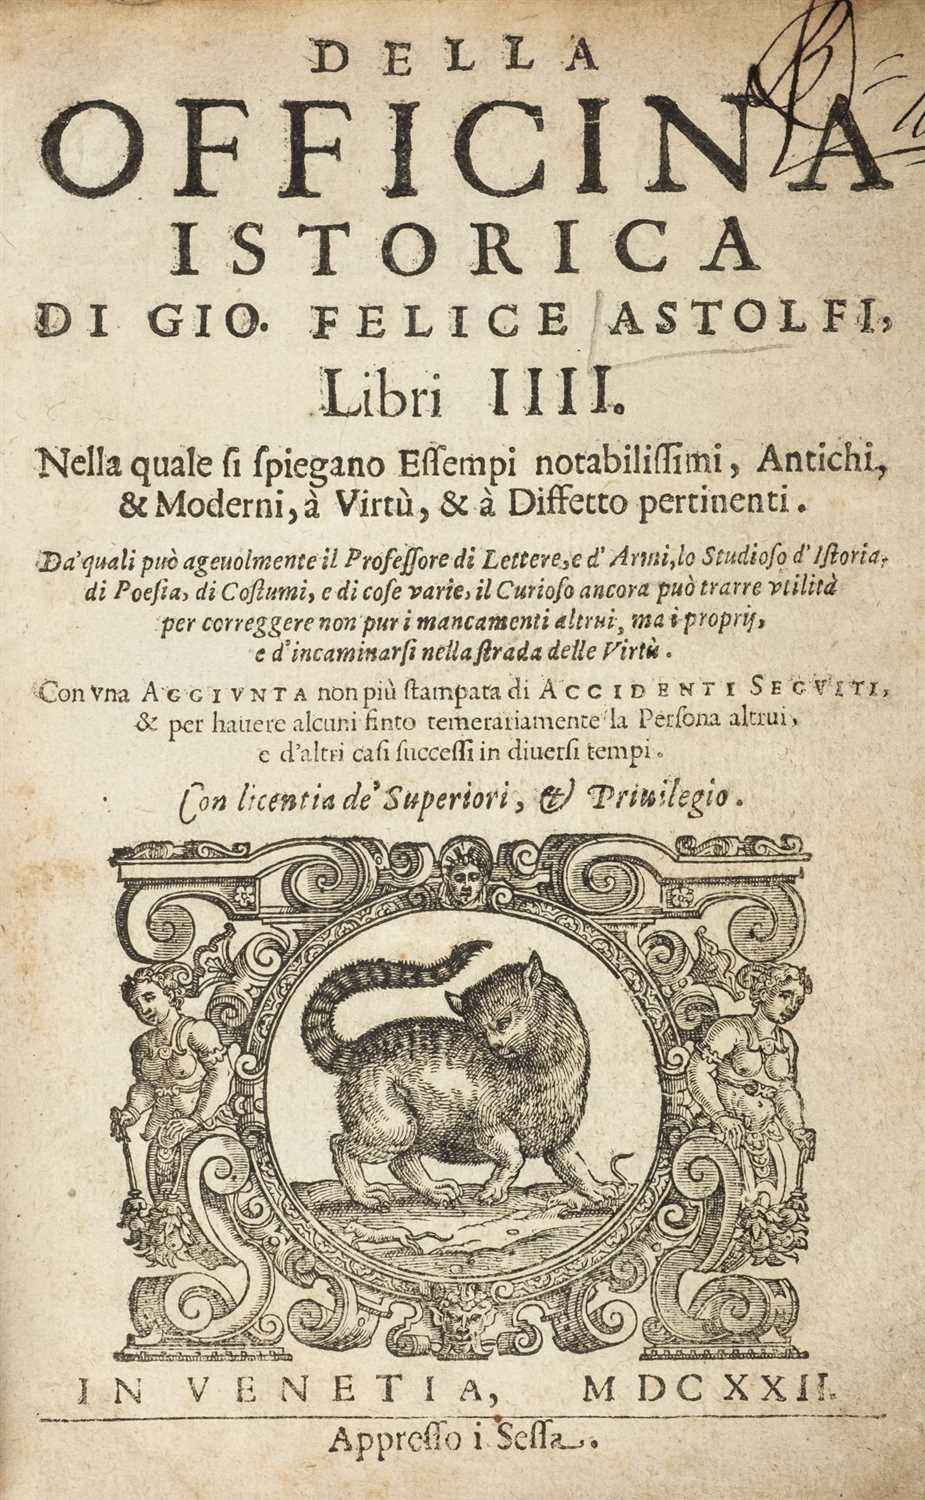 Lot 282 - Astolfi (Giovanni Felice). Della Officina Istorica, Libri III, 3rd edition, Venice, 1622